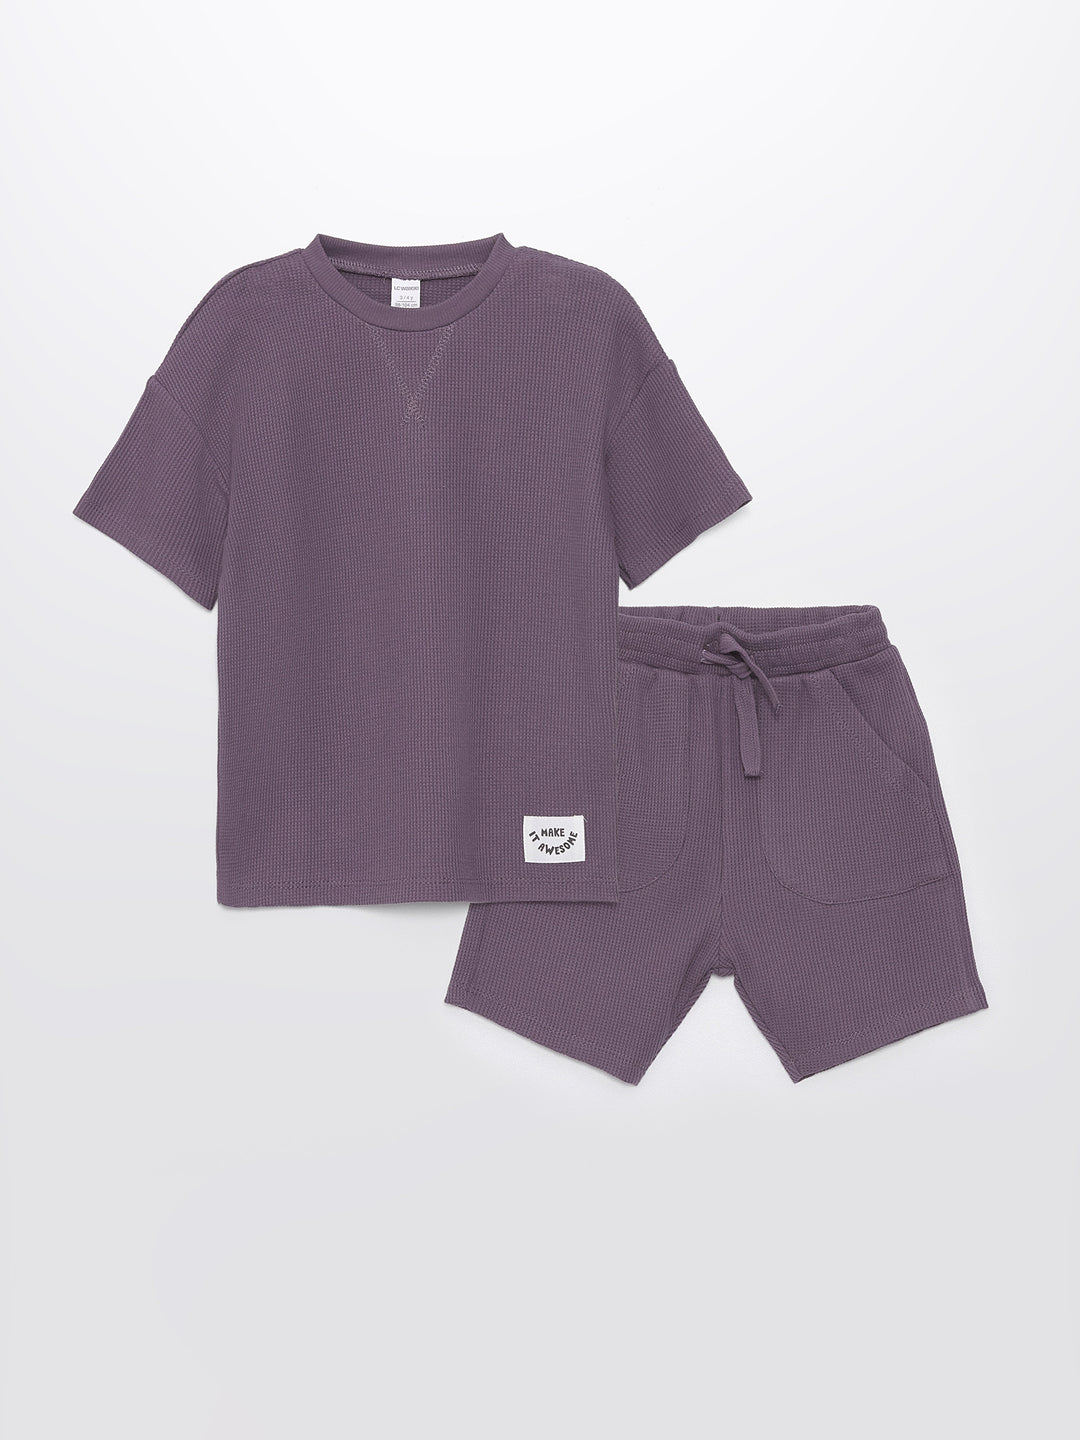 Crew Neck Basic Baby Boy T-Shirt and Shorts Set of 2